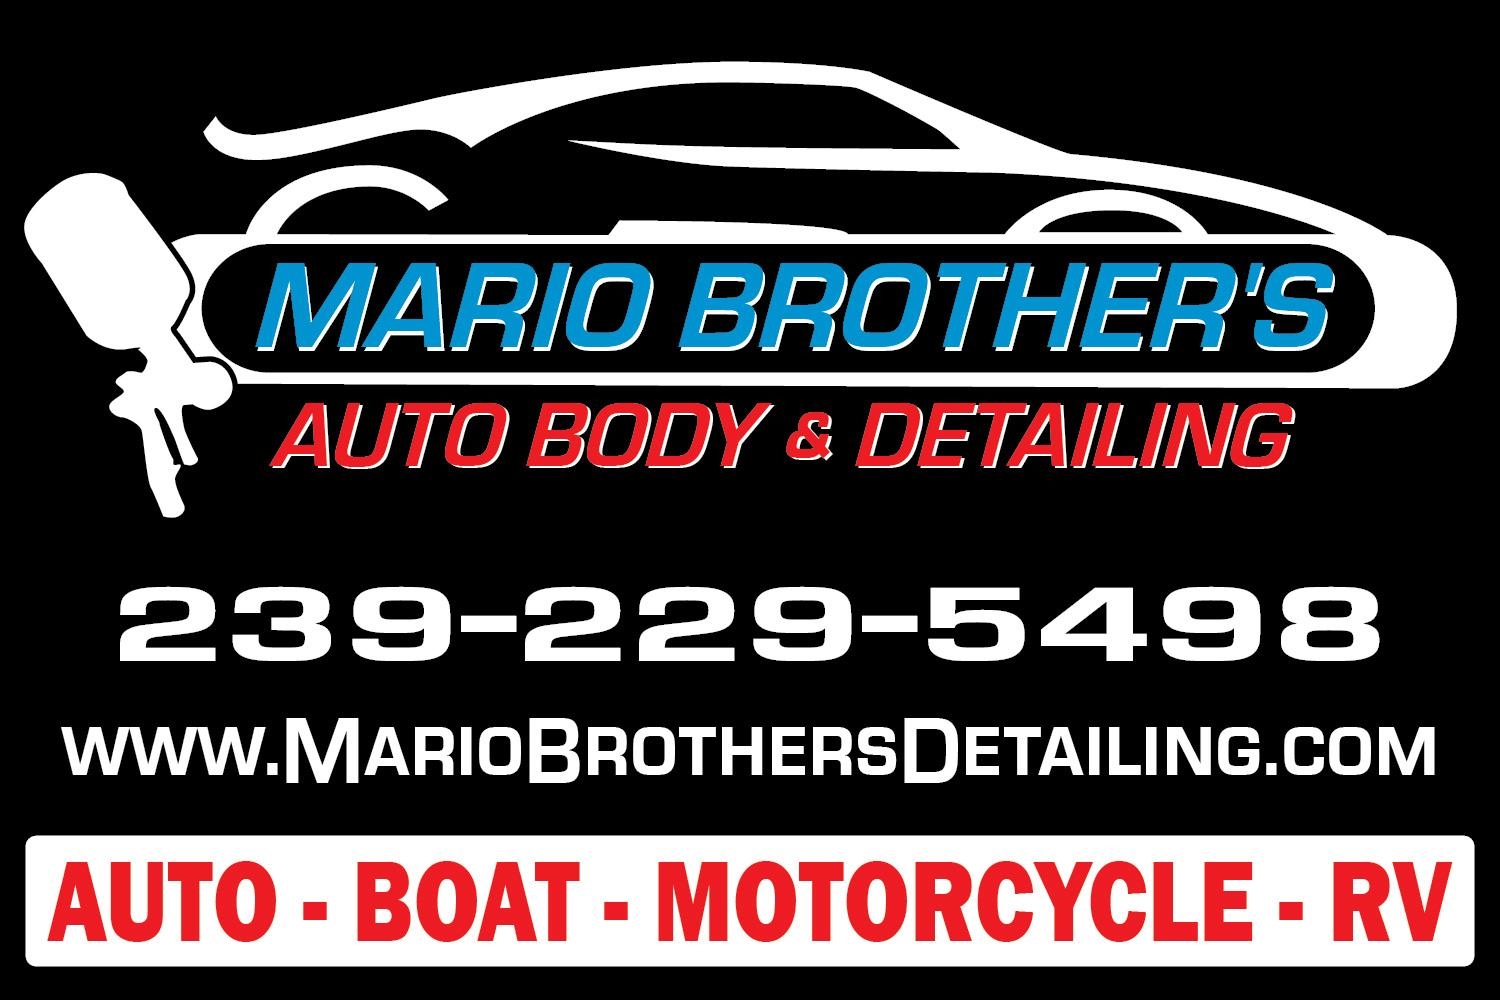 Mario Brother's Auto Body